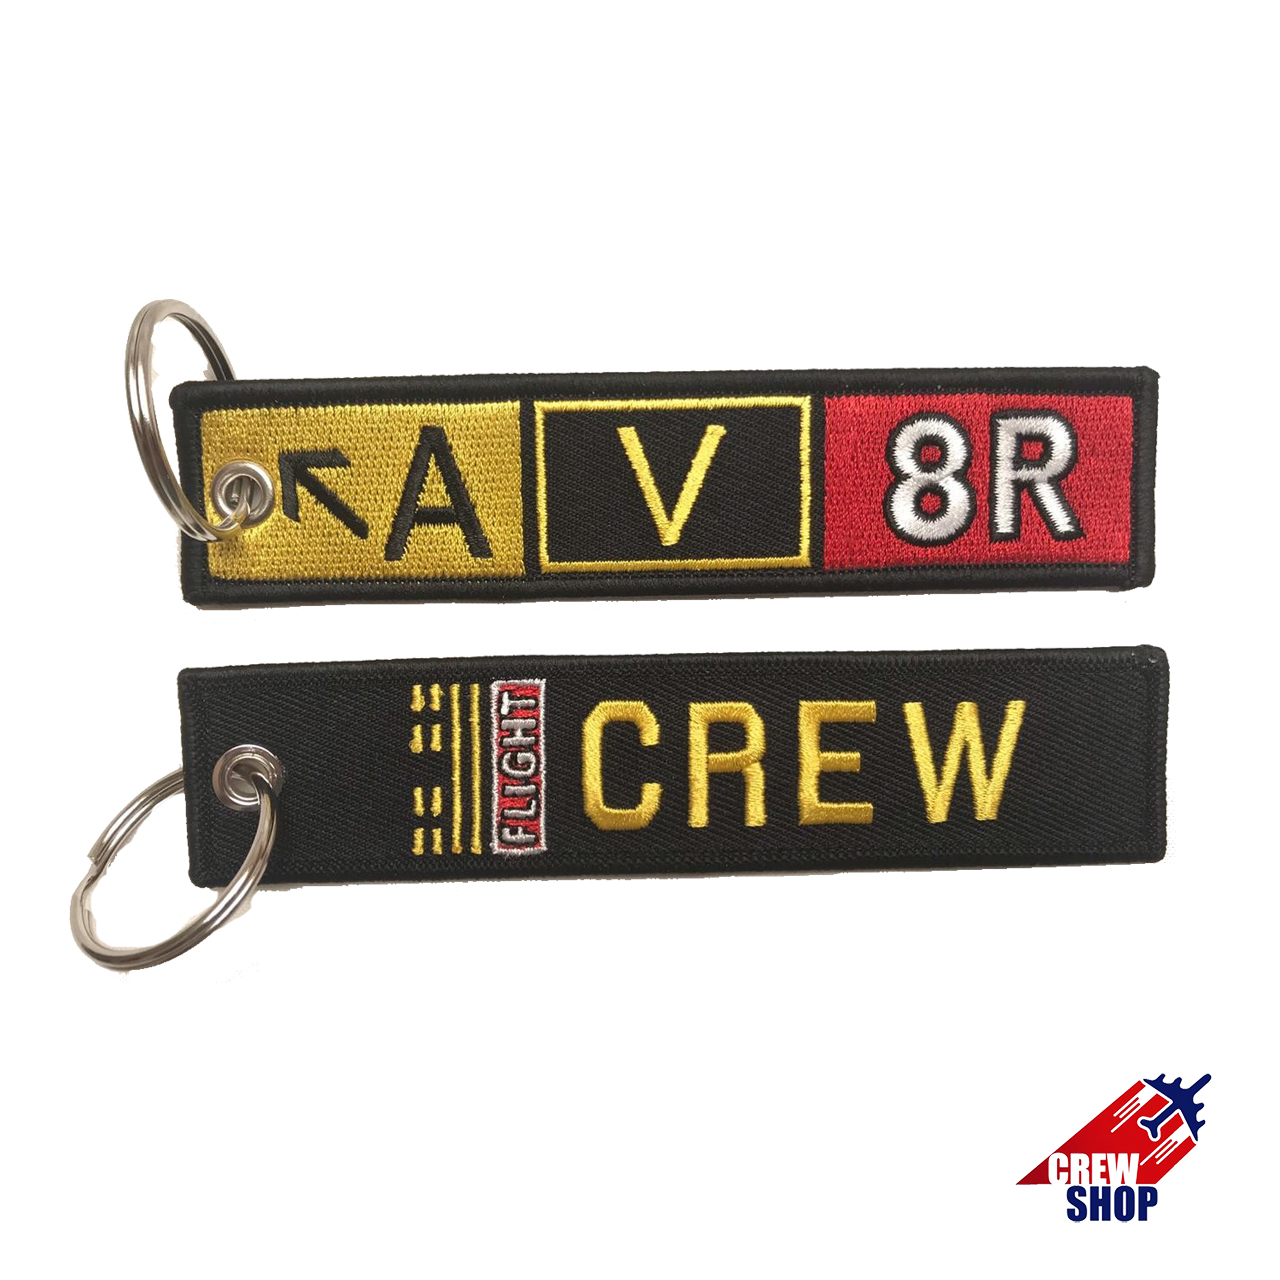 A/V/8R- Flight CREW,  